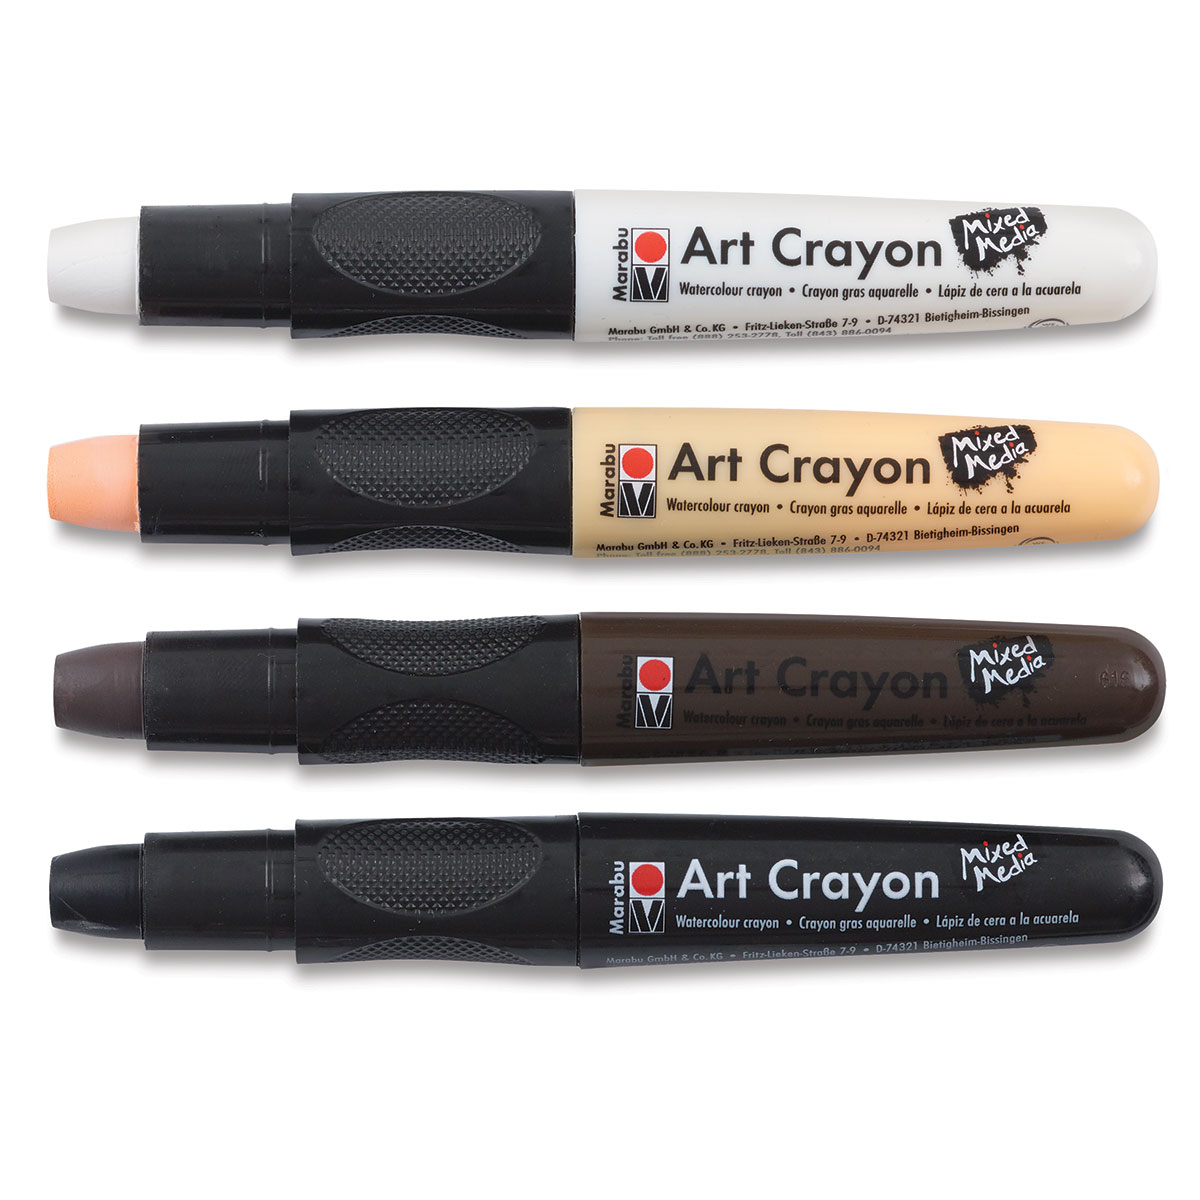 MARABU - Crayon de cire Art Crayon Mixed Media